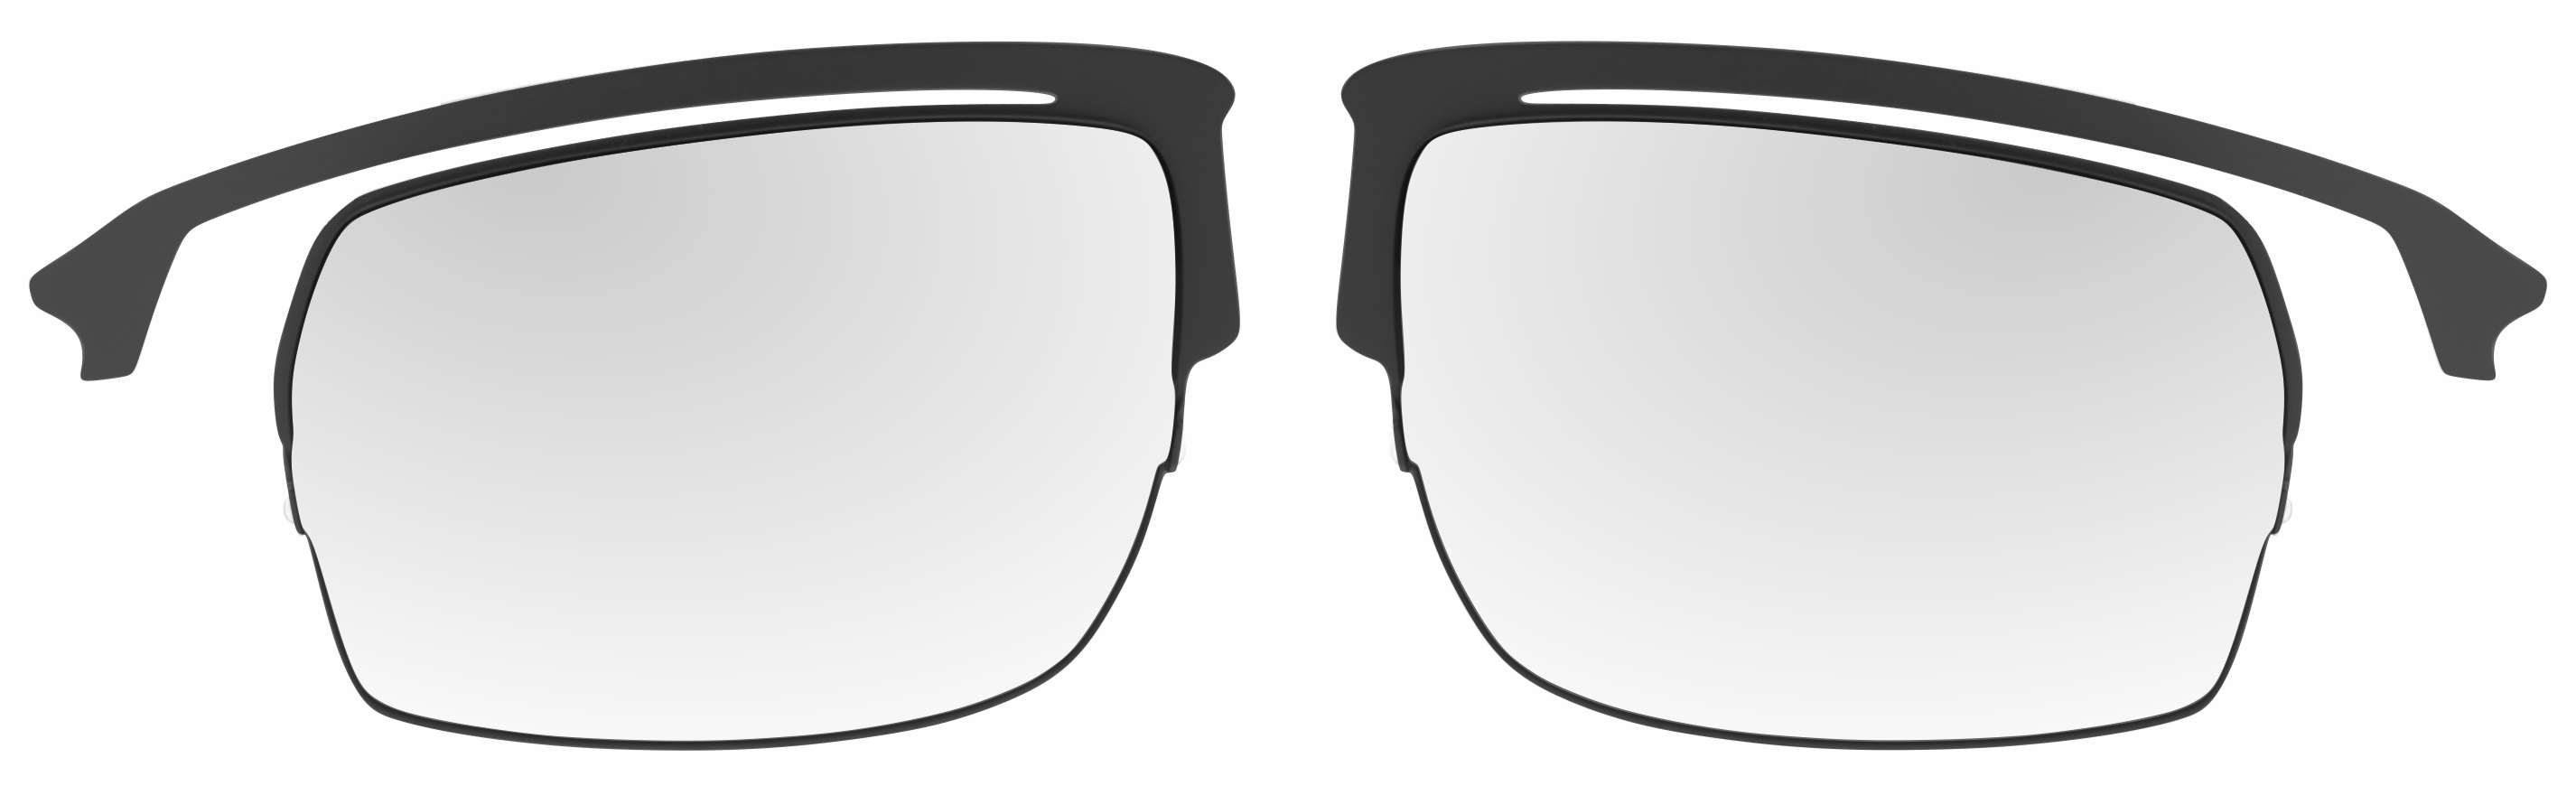 Optická redukce do rámu slunečních sportovních brýlí R2 Racer AT063 - kovová -